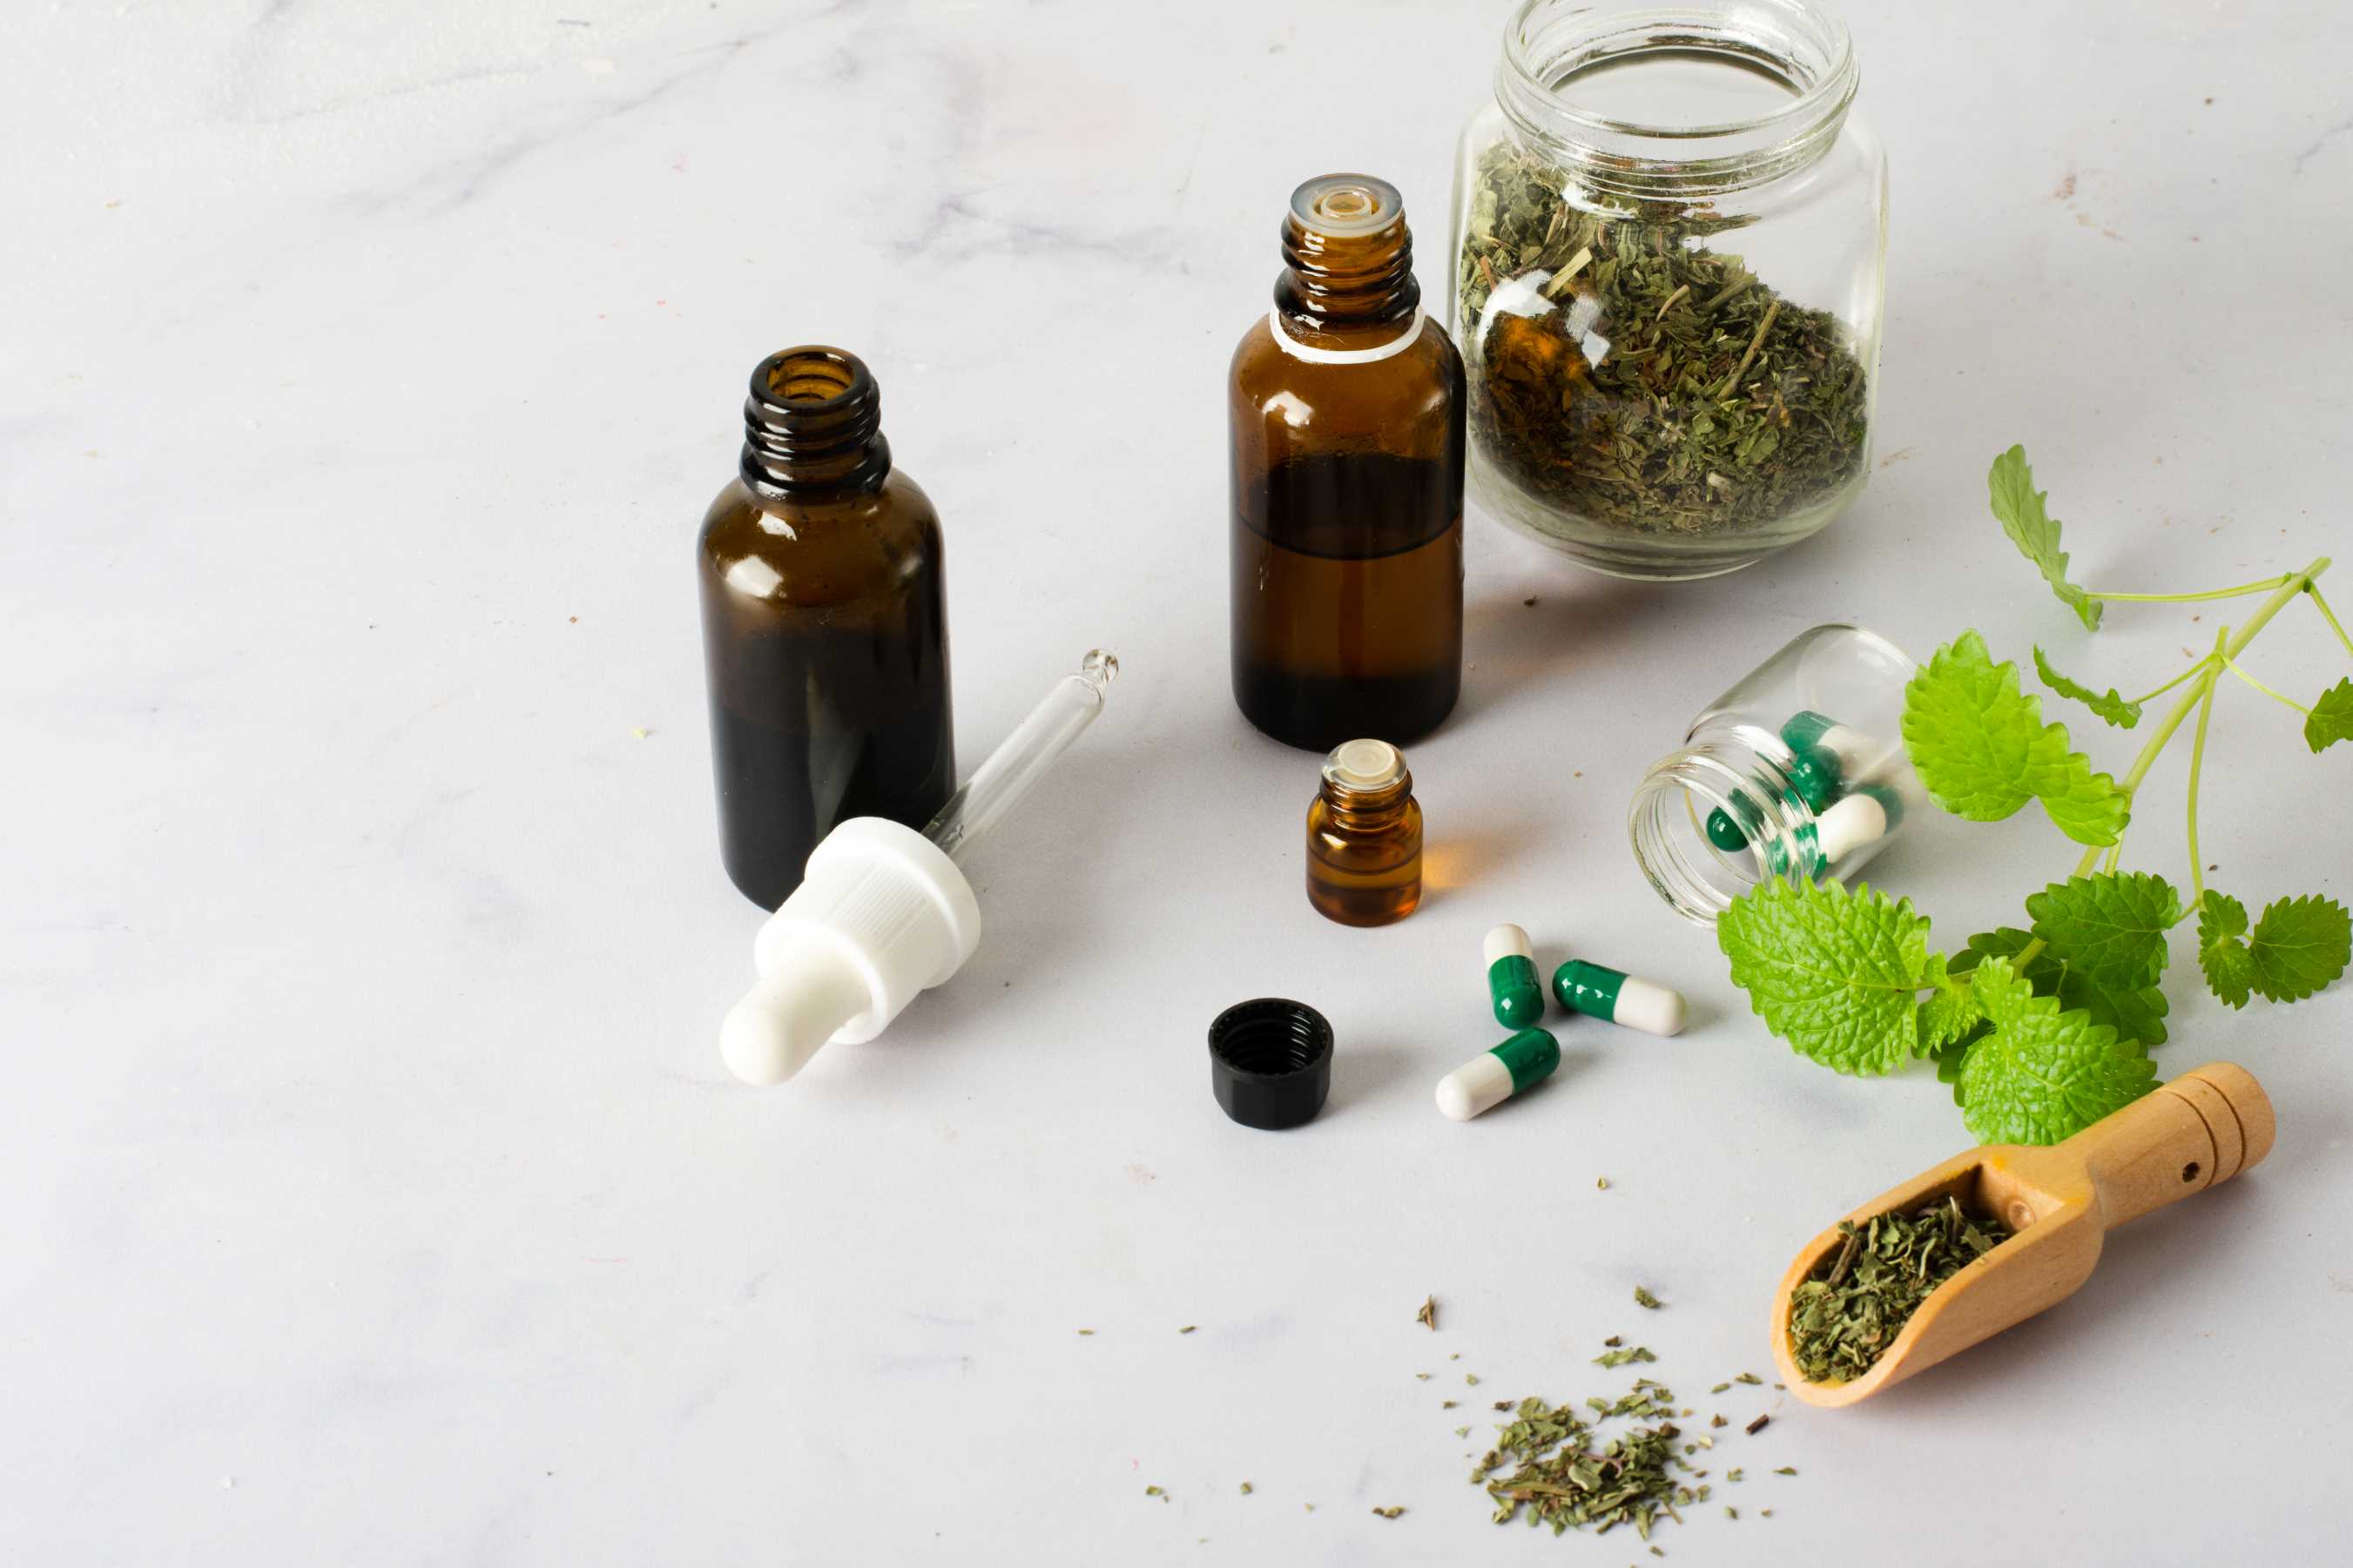 Inilah 8 Obat Asma Tradisional dari Bahan Herbal Alami Paling Ampuh, Kamu Wajib Tahu